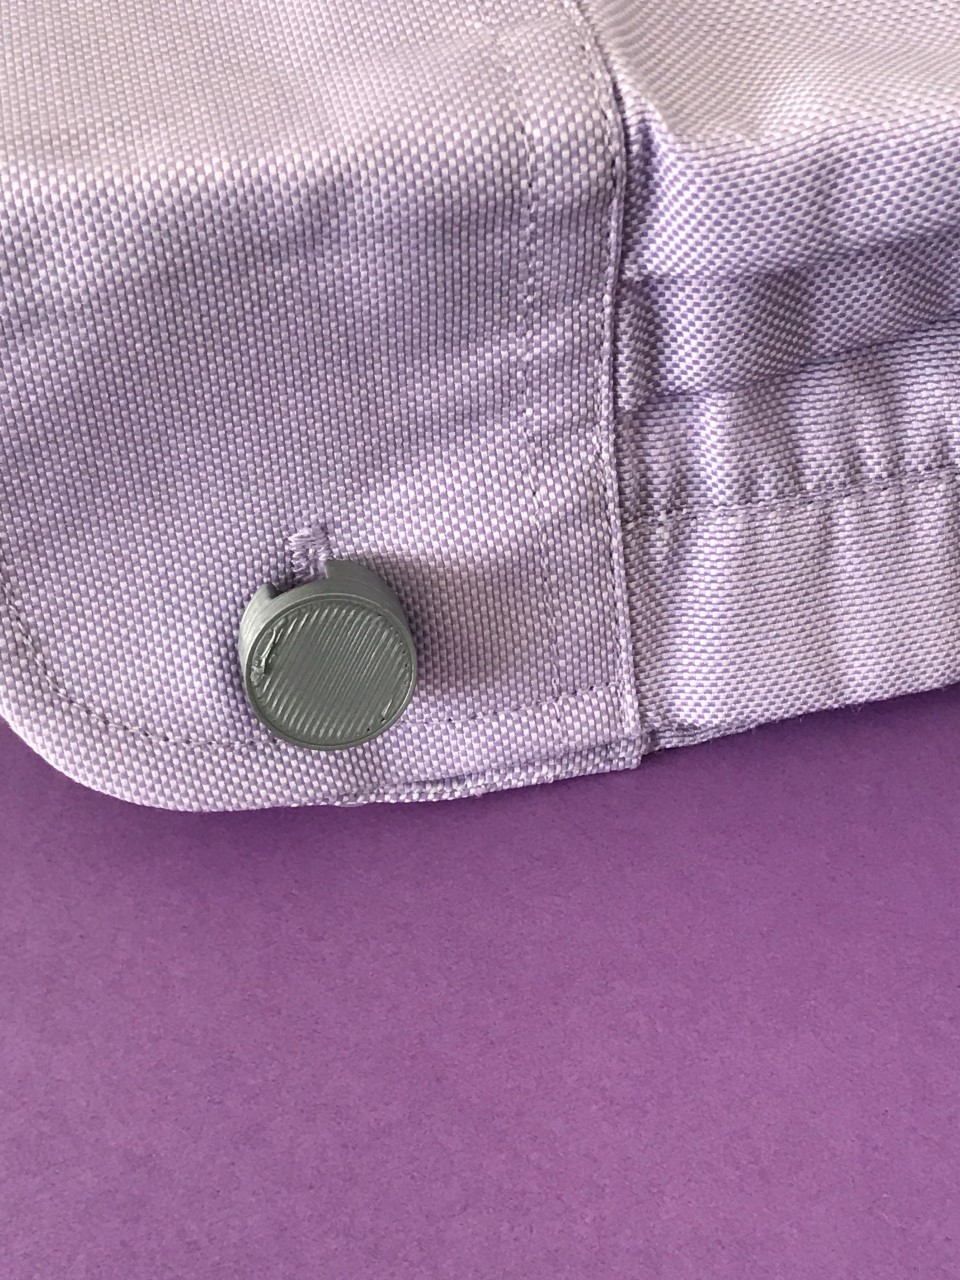 Cufflink button with novel hinge - convert buttons to cufflinks ...